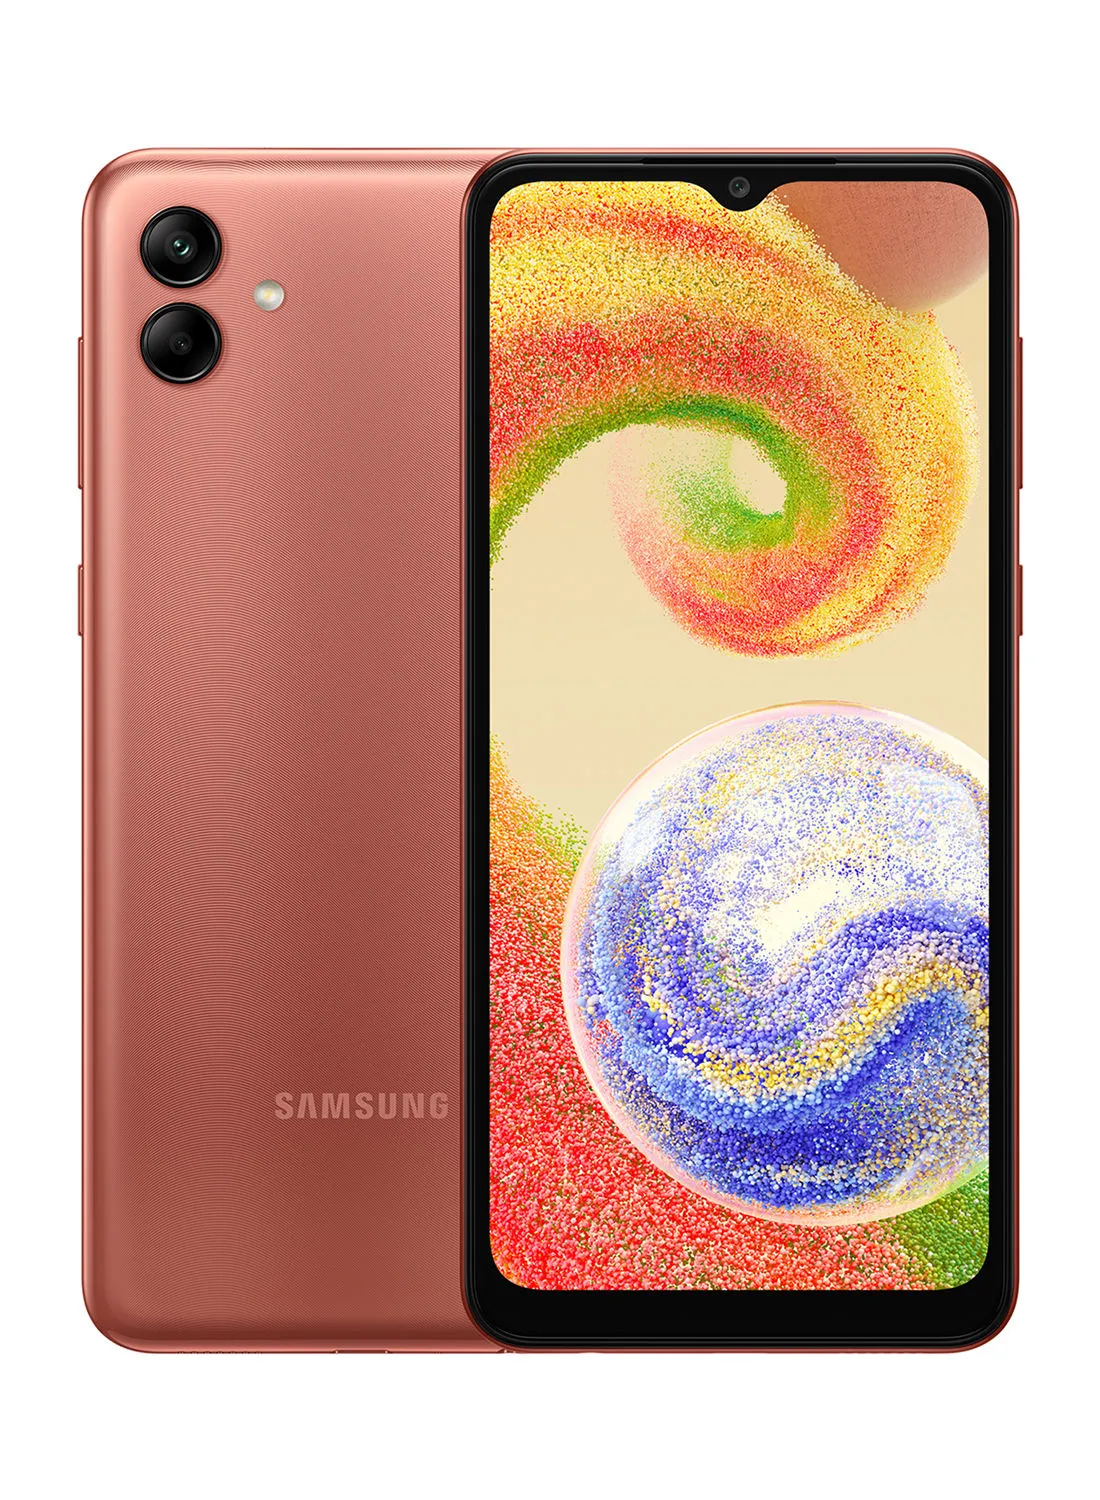 Samsung Galaxy A04 Dual SIM Copper 3GB RAM 32GB  - Middle East Version